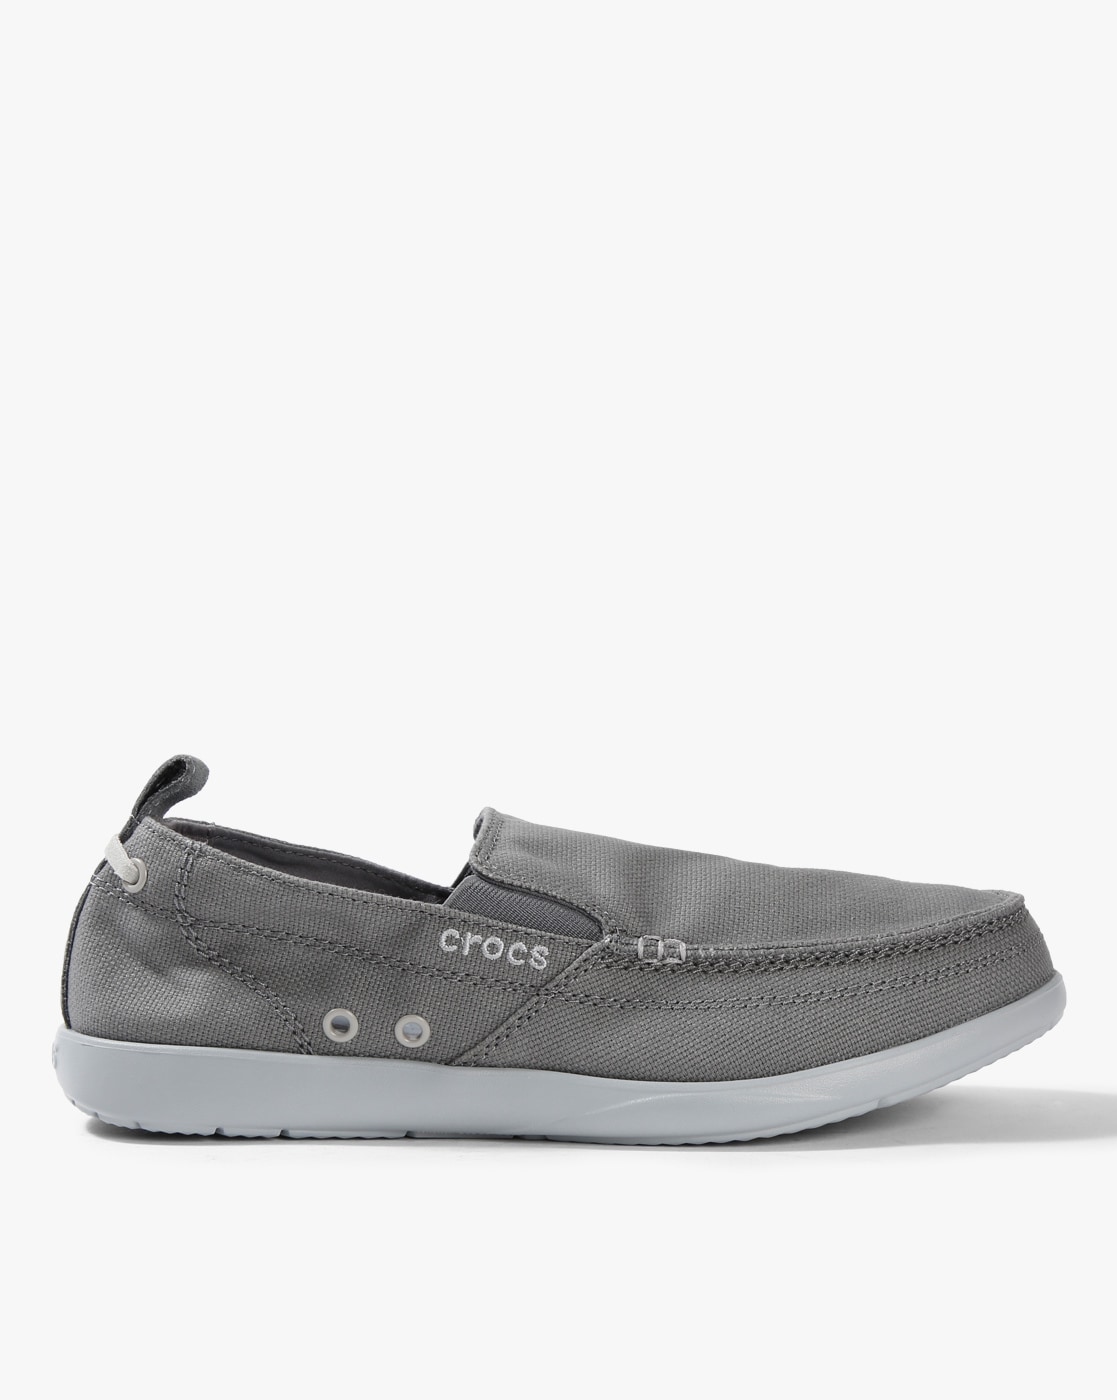 crocs slip on shoes